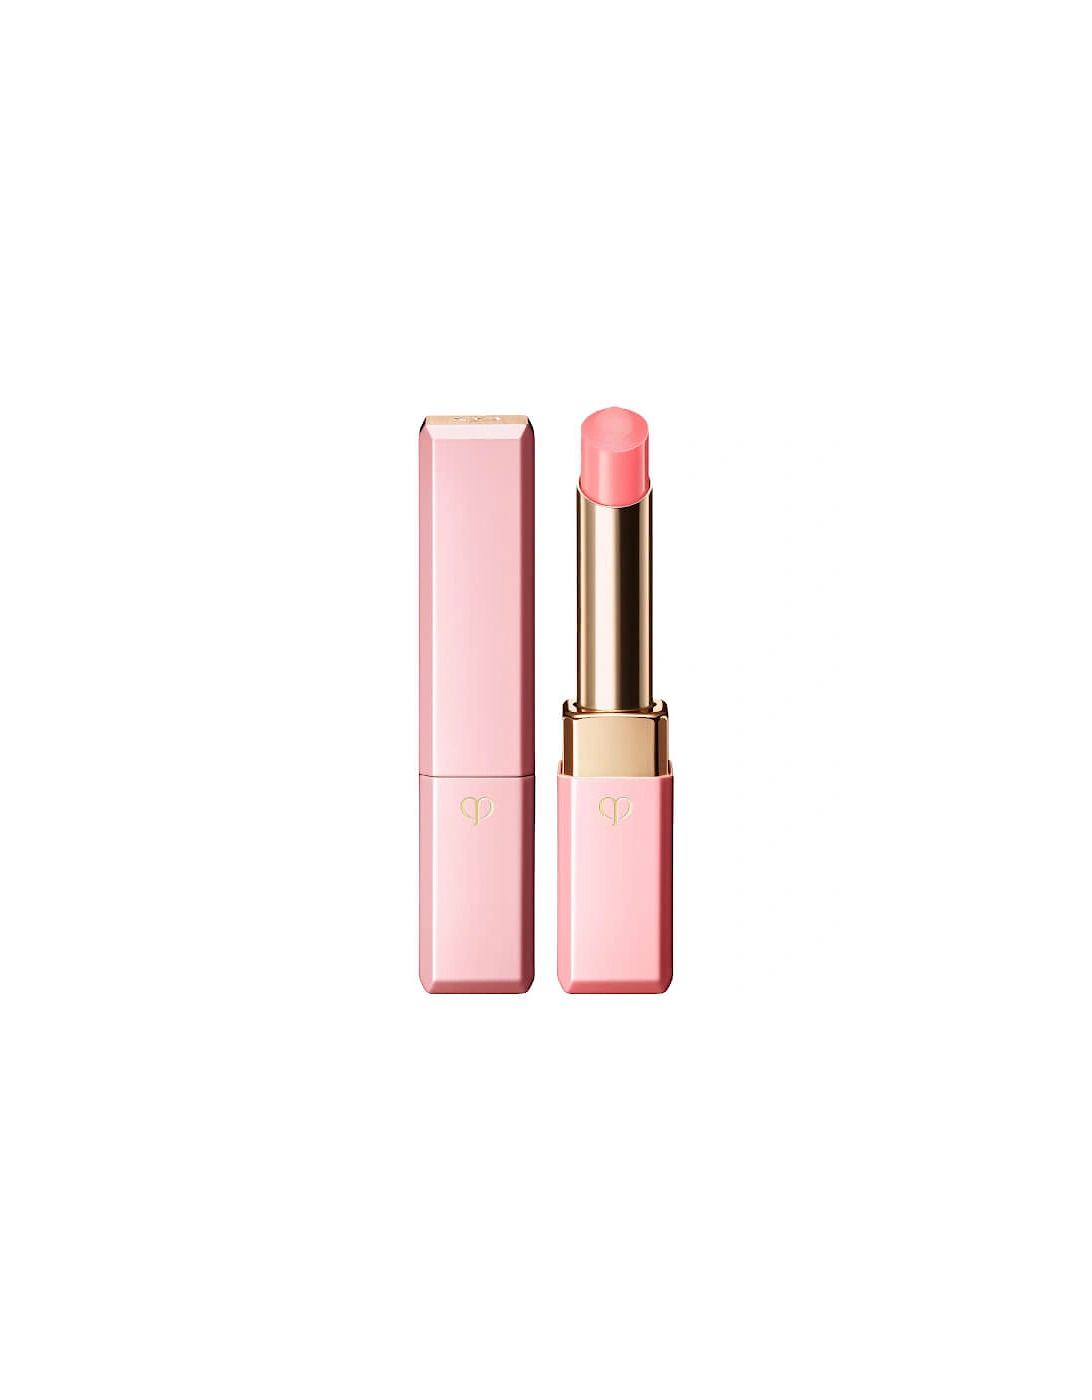 Clé de Peau Beauté Lip Glorifier No1 - Pink, 2 of 1